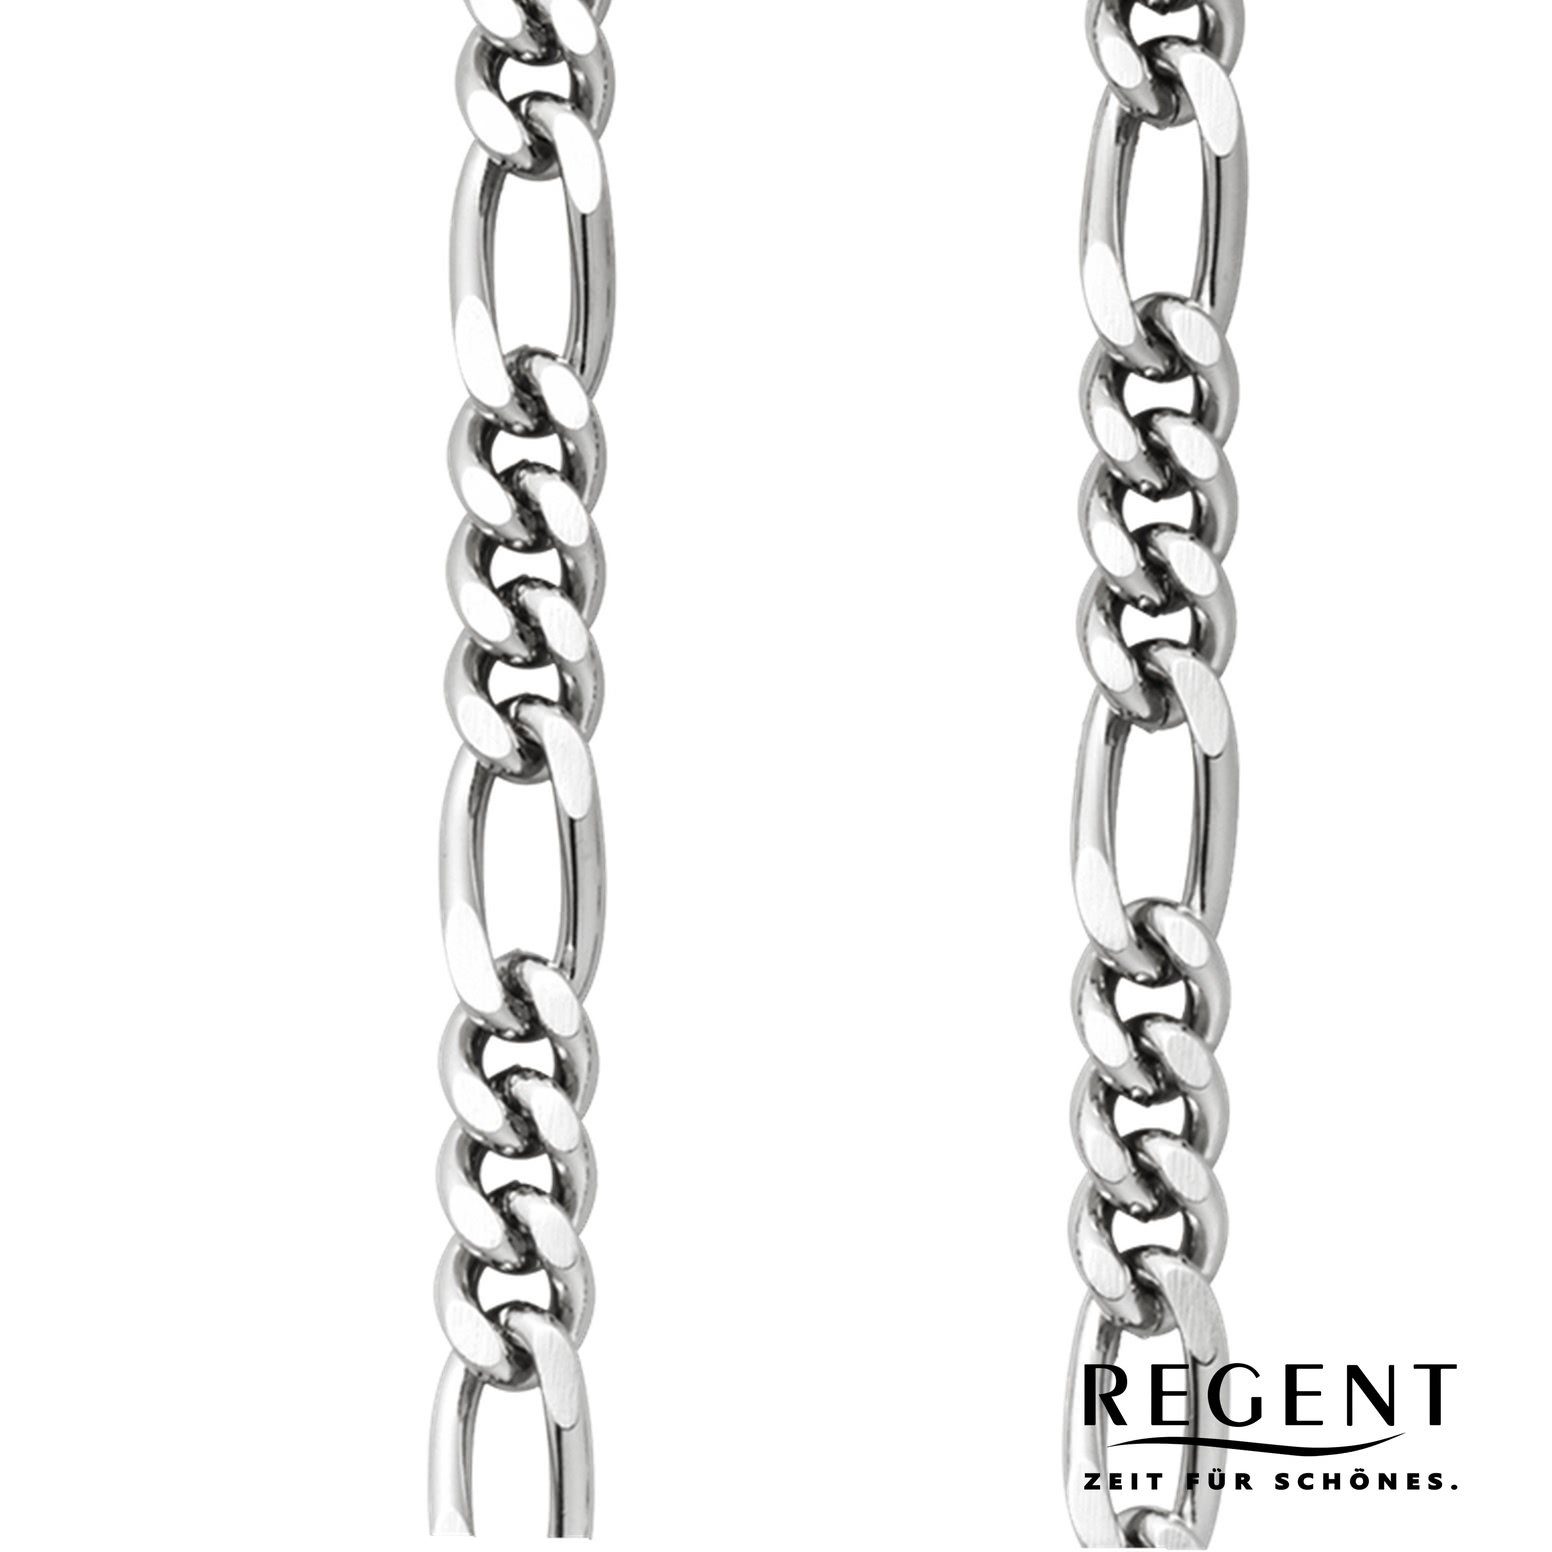 Elegant Kettenuhr 5mm P-49 Regent Taschenuhrenkette, Herren Taschenuhren-Kette Regent Figaro,